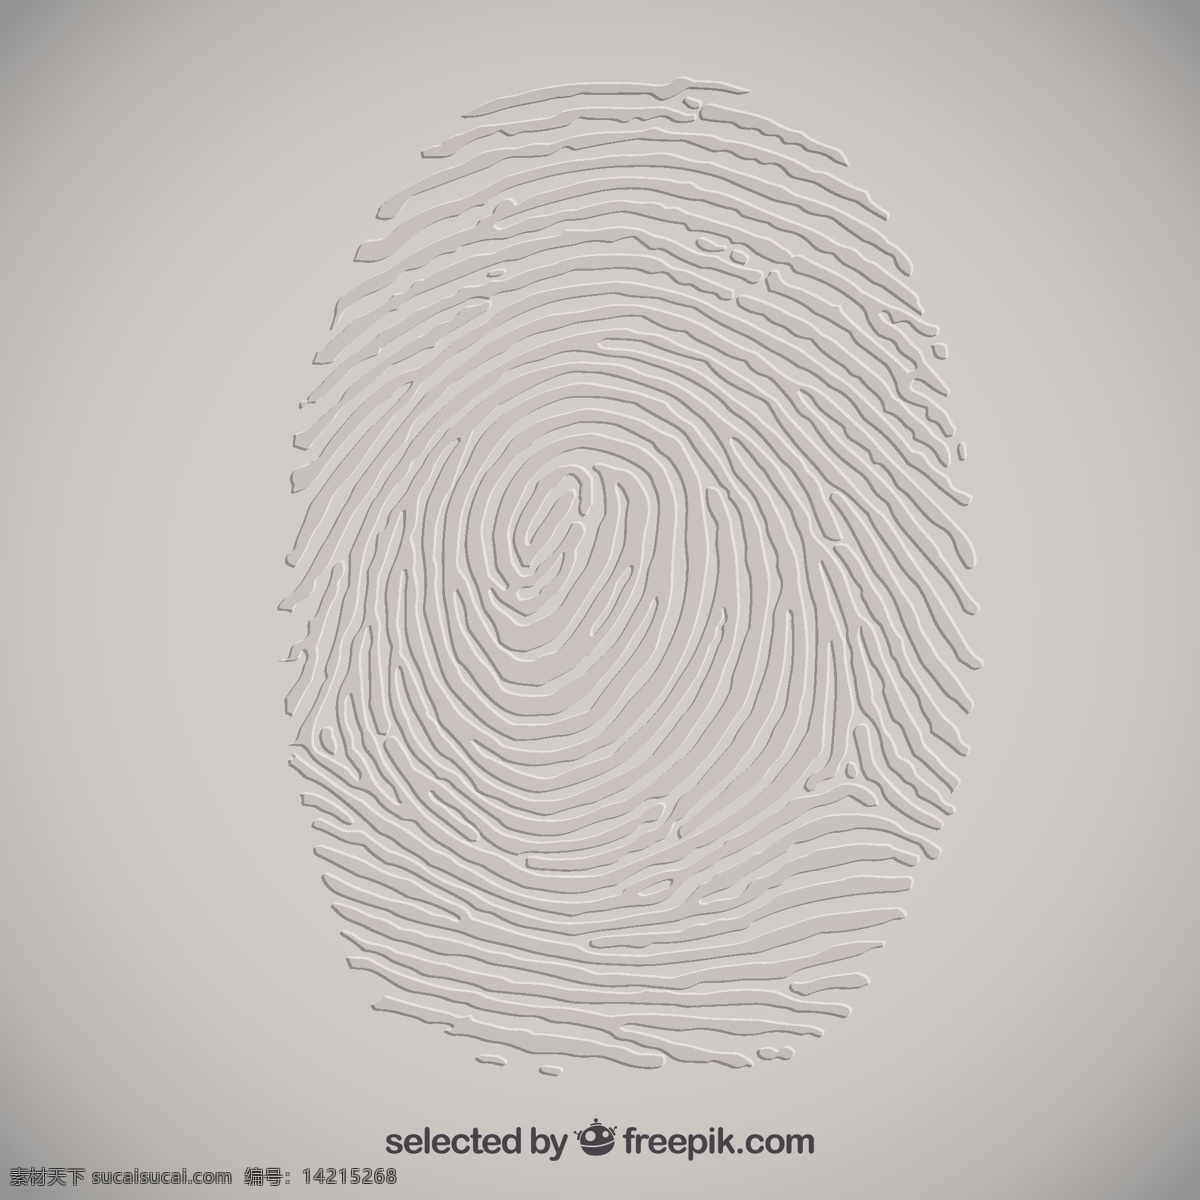 浮雕的指纹 人 警察 印刷品 指纹 符号 身份 编码 标记 犯罪 调查 浮雕 证据 灰色